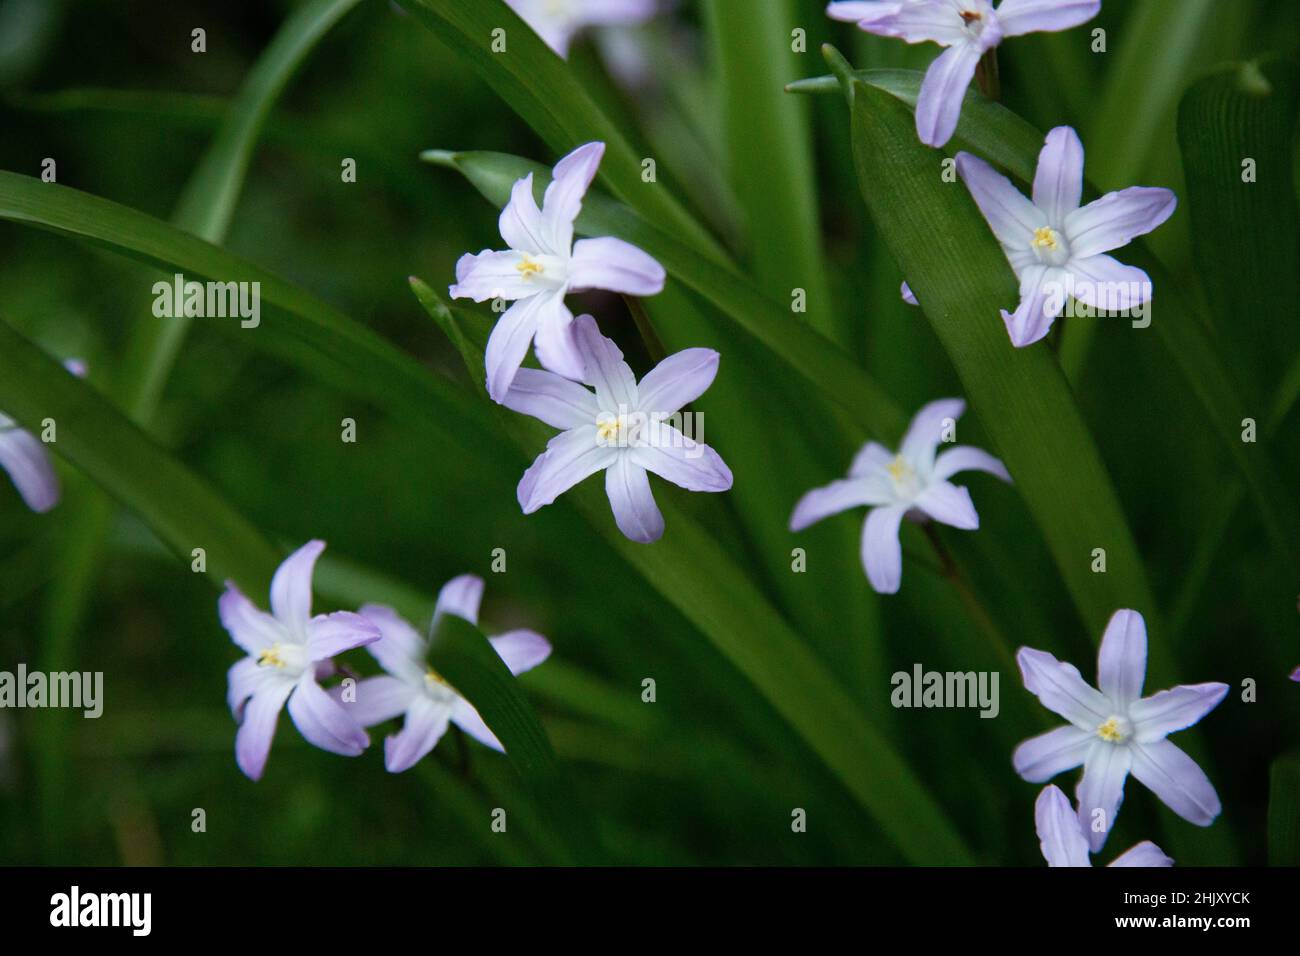 Scilla luciliae oder Chionodoxa luciliae, die Glory-of-the-Snow-Glühbirne, die im Frühling in einem Hüttengarten mit kleinen violett-blauen Blüten blüht. Stockfoto